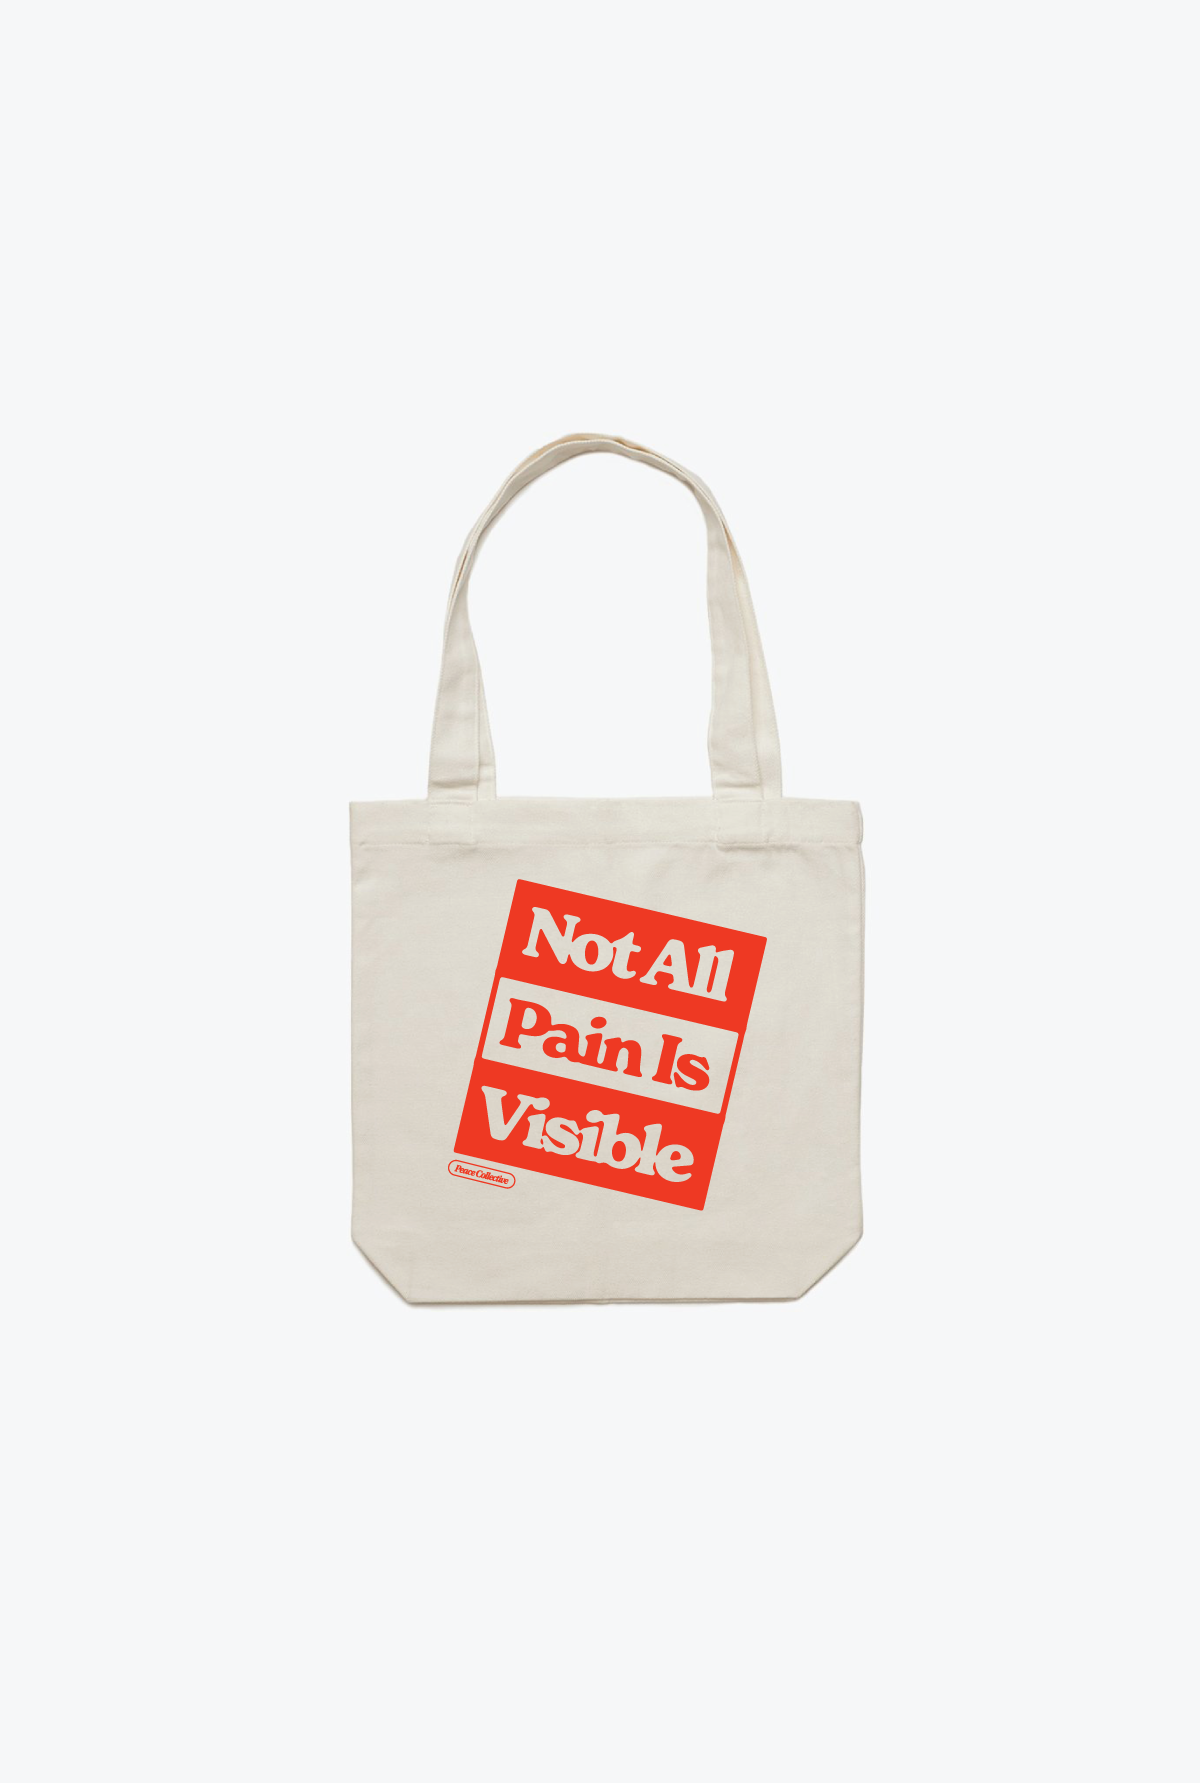 NOT OK Tote Bag - Natural